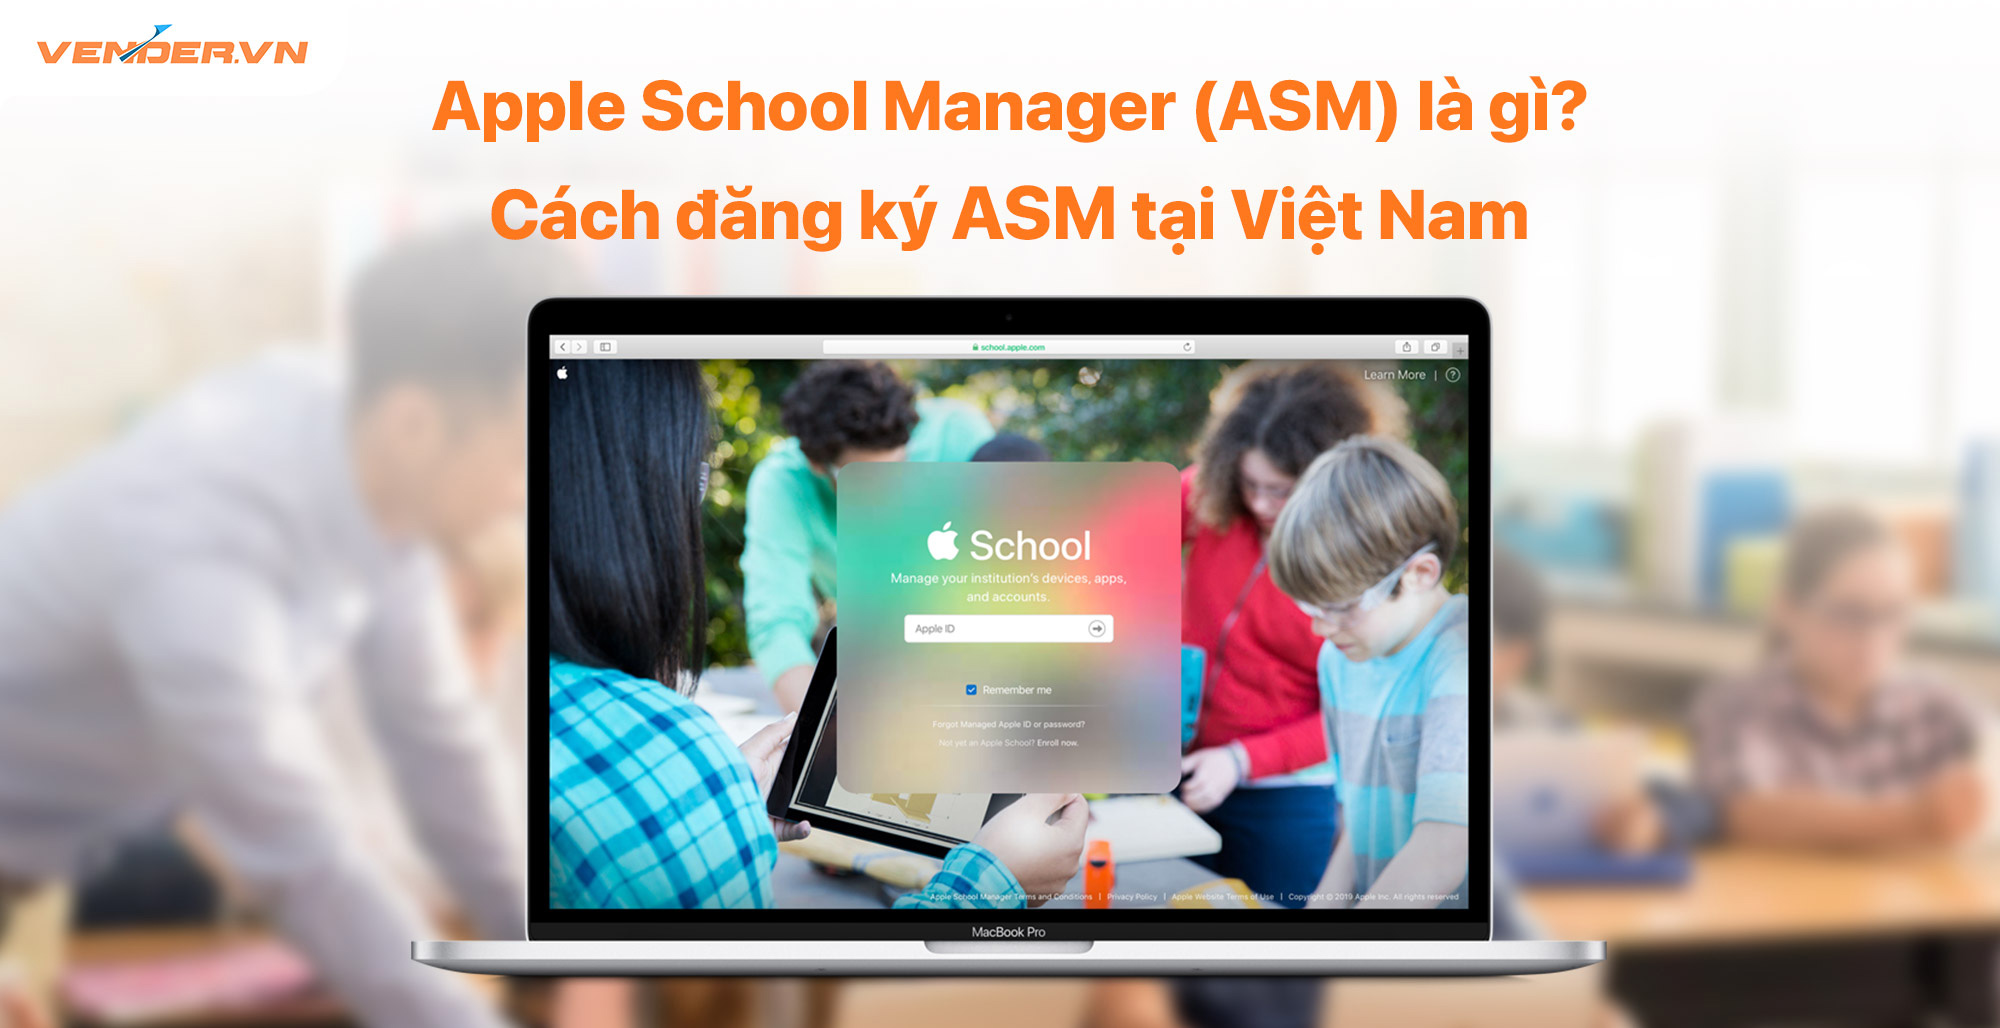 Quản lý thiết bị dễ dàng hơn với Apple School Manager